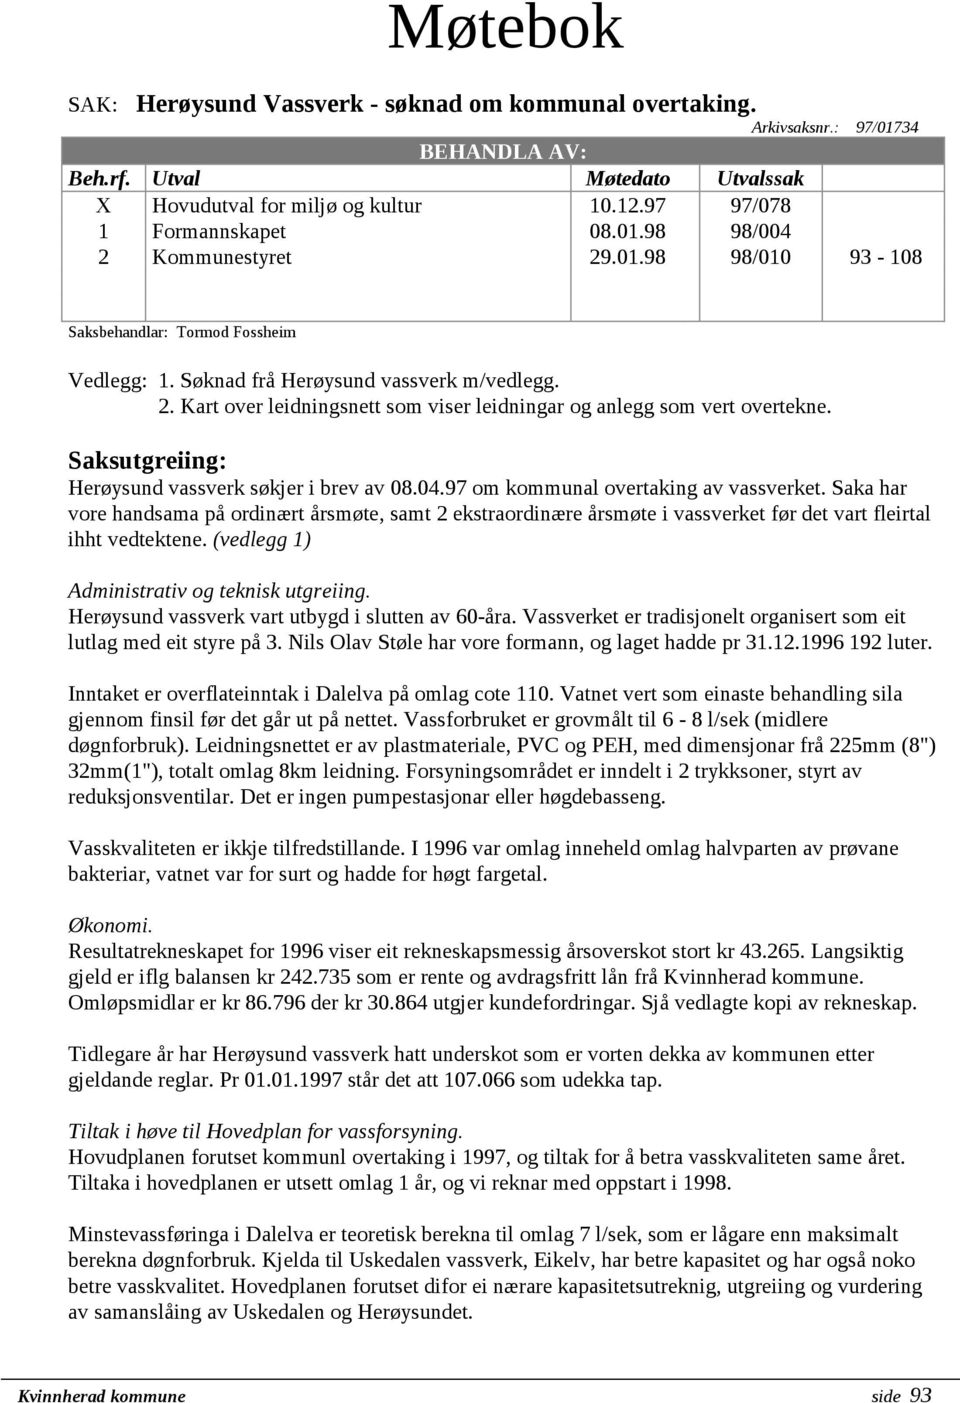 Saksutgreiing: Herøysund vassverk søkjer i brev av 08.04.97 om kommunal overtaking av vassverket.